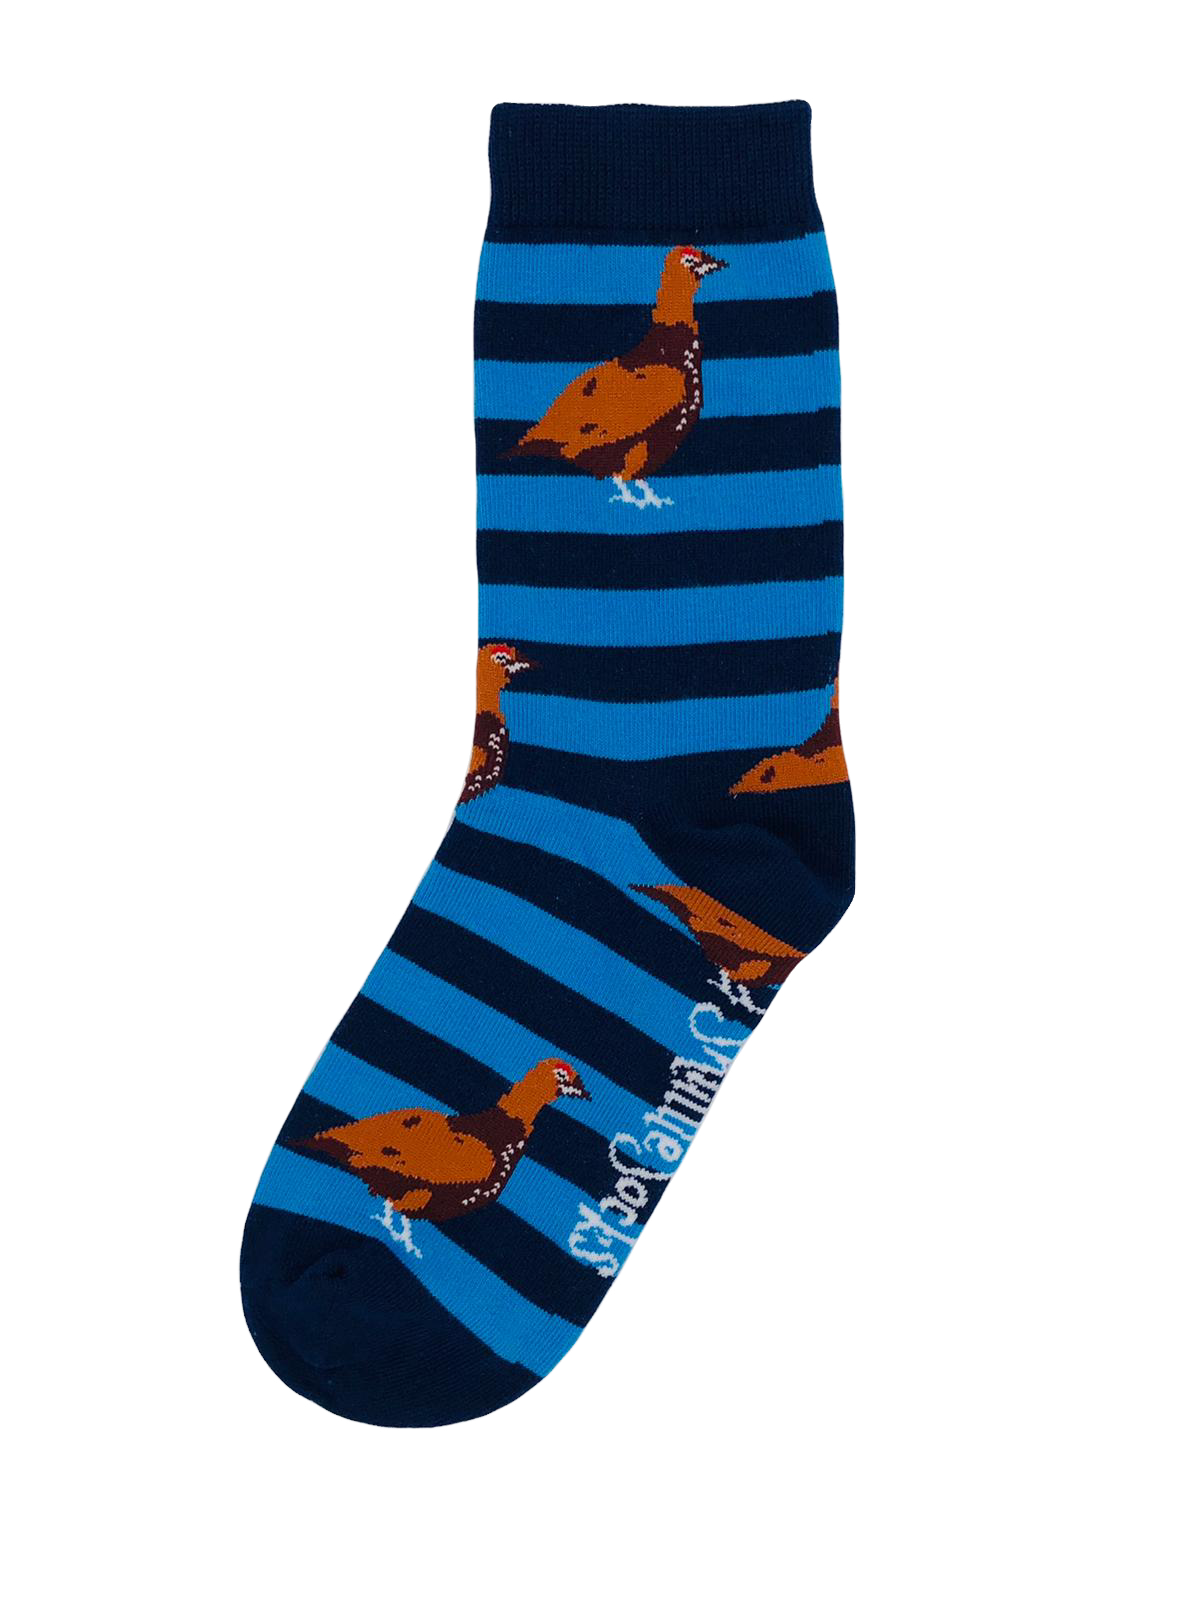 Navy & Blue Grouse Socks - Children's